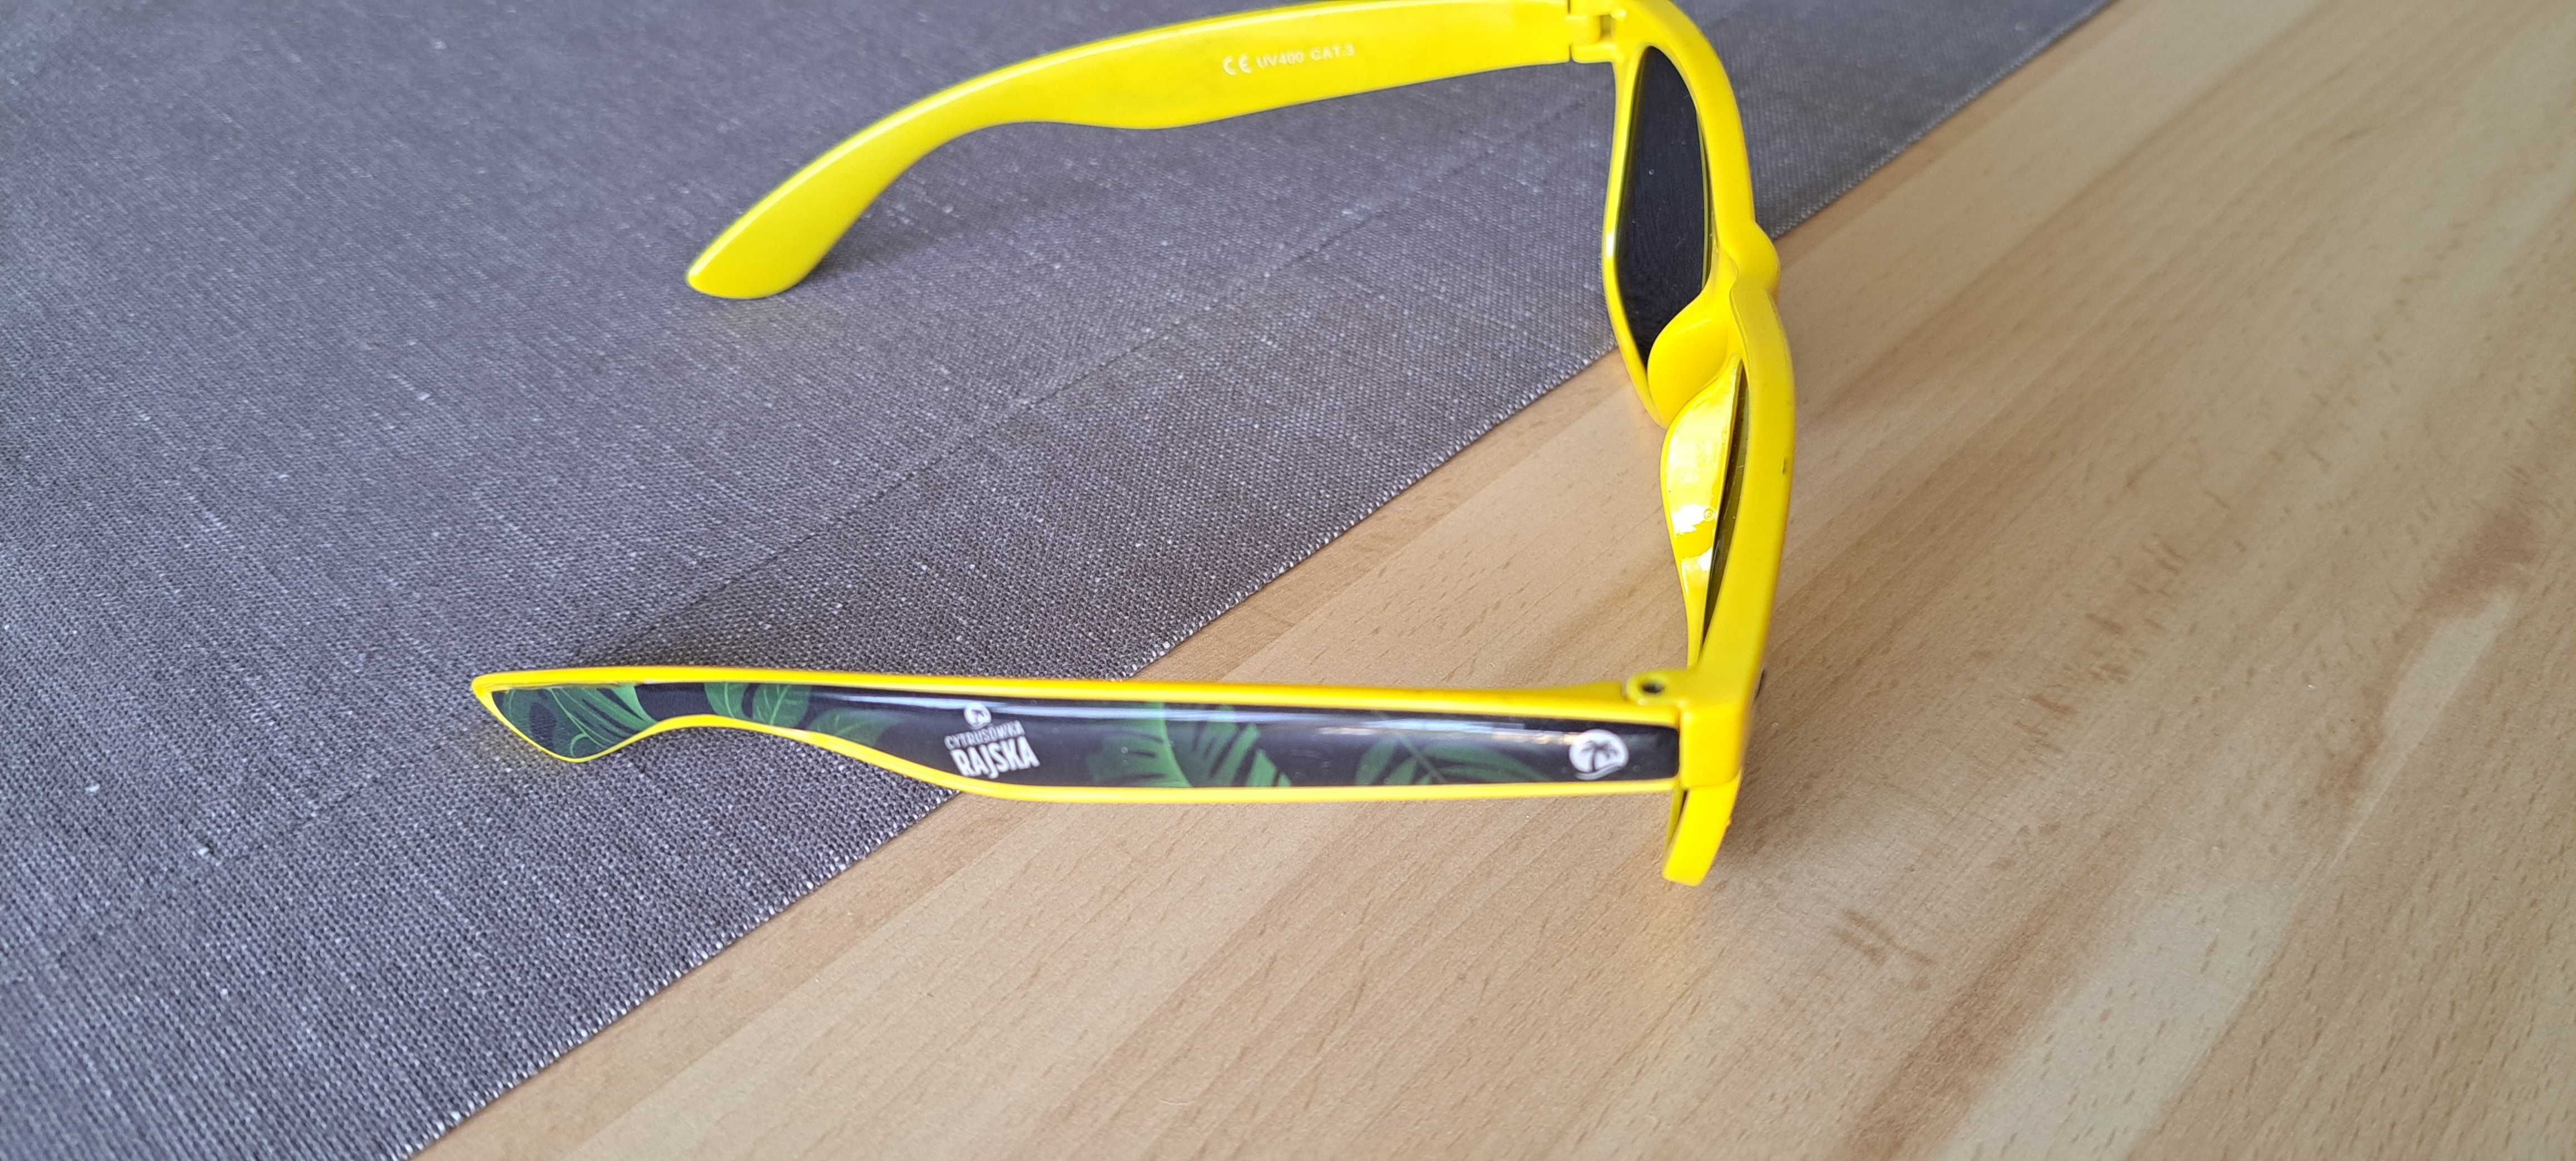 Okulary przeciwsłoneczne, żółte oprawki, UV 400, gadżet Nowe